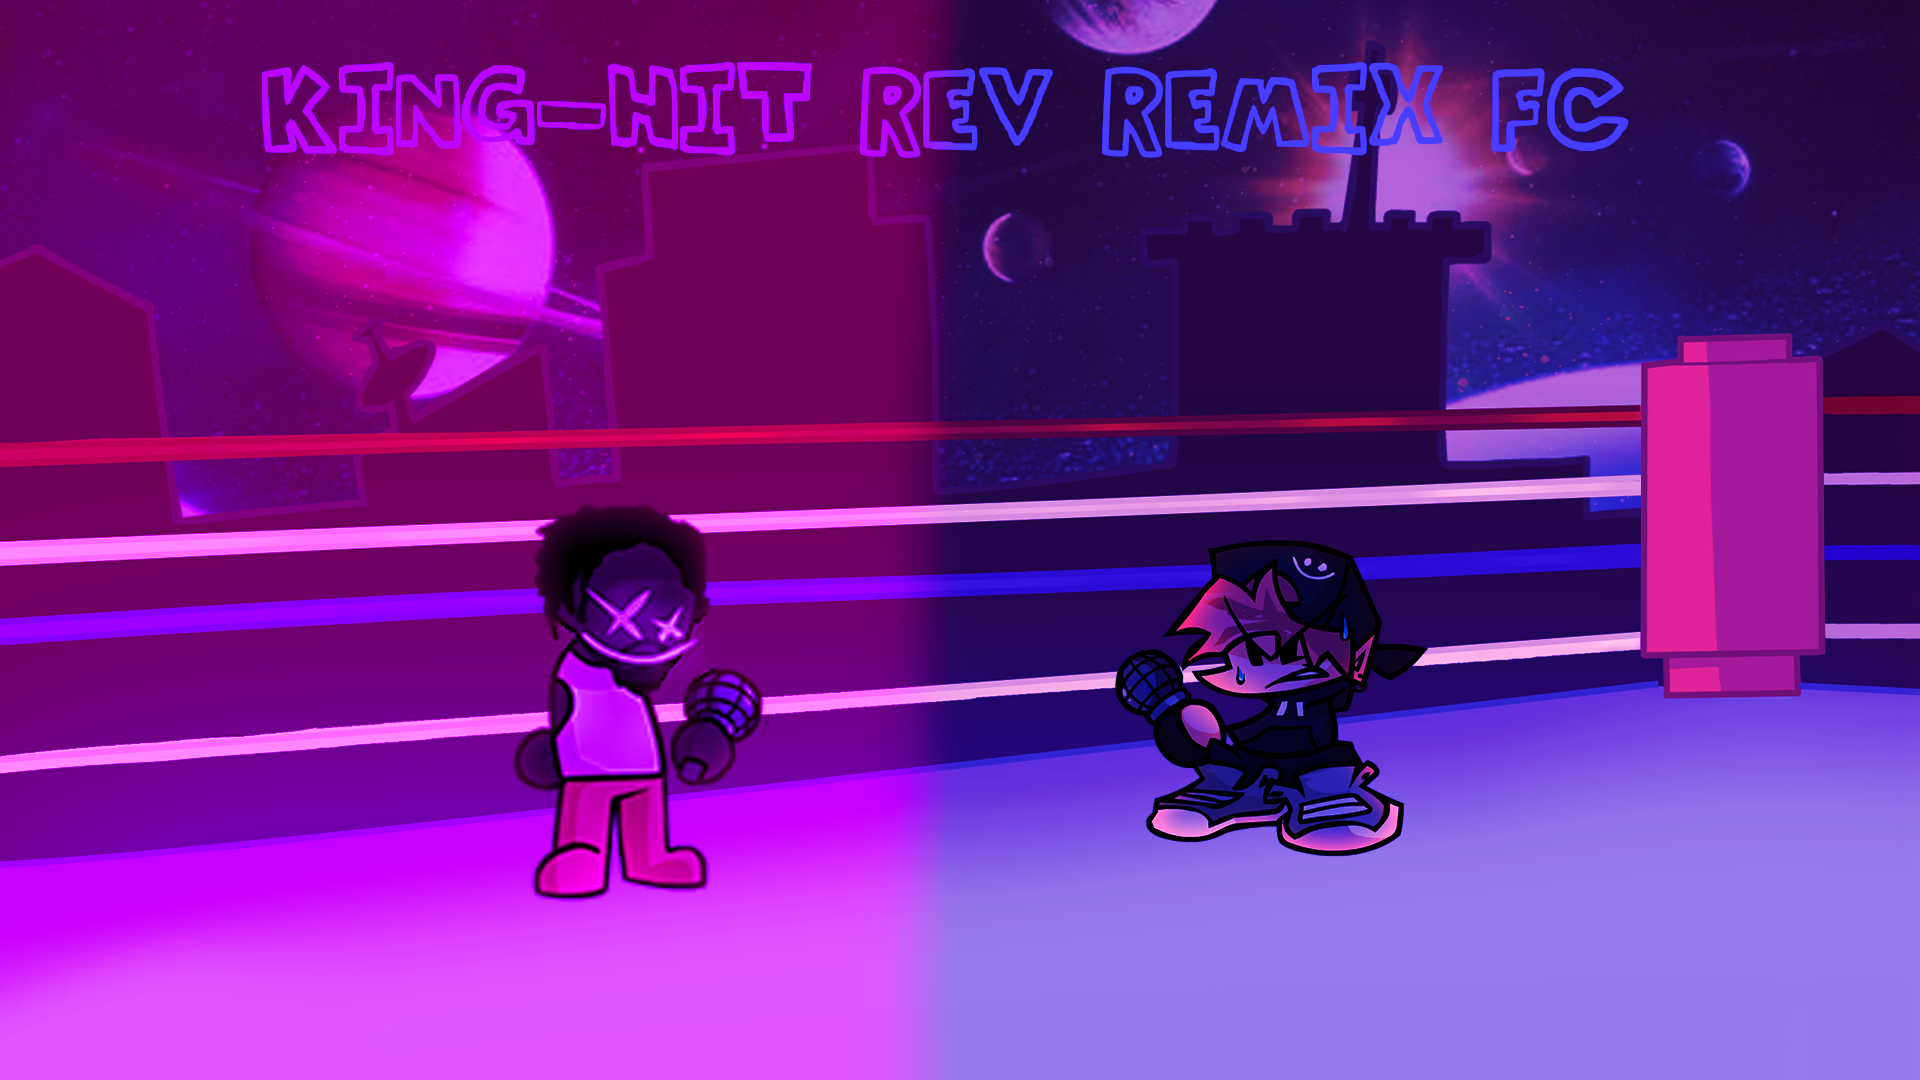 King-Hit Rev remix FC